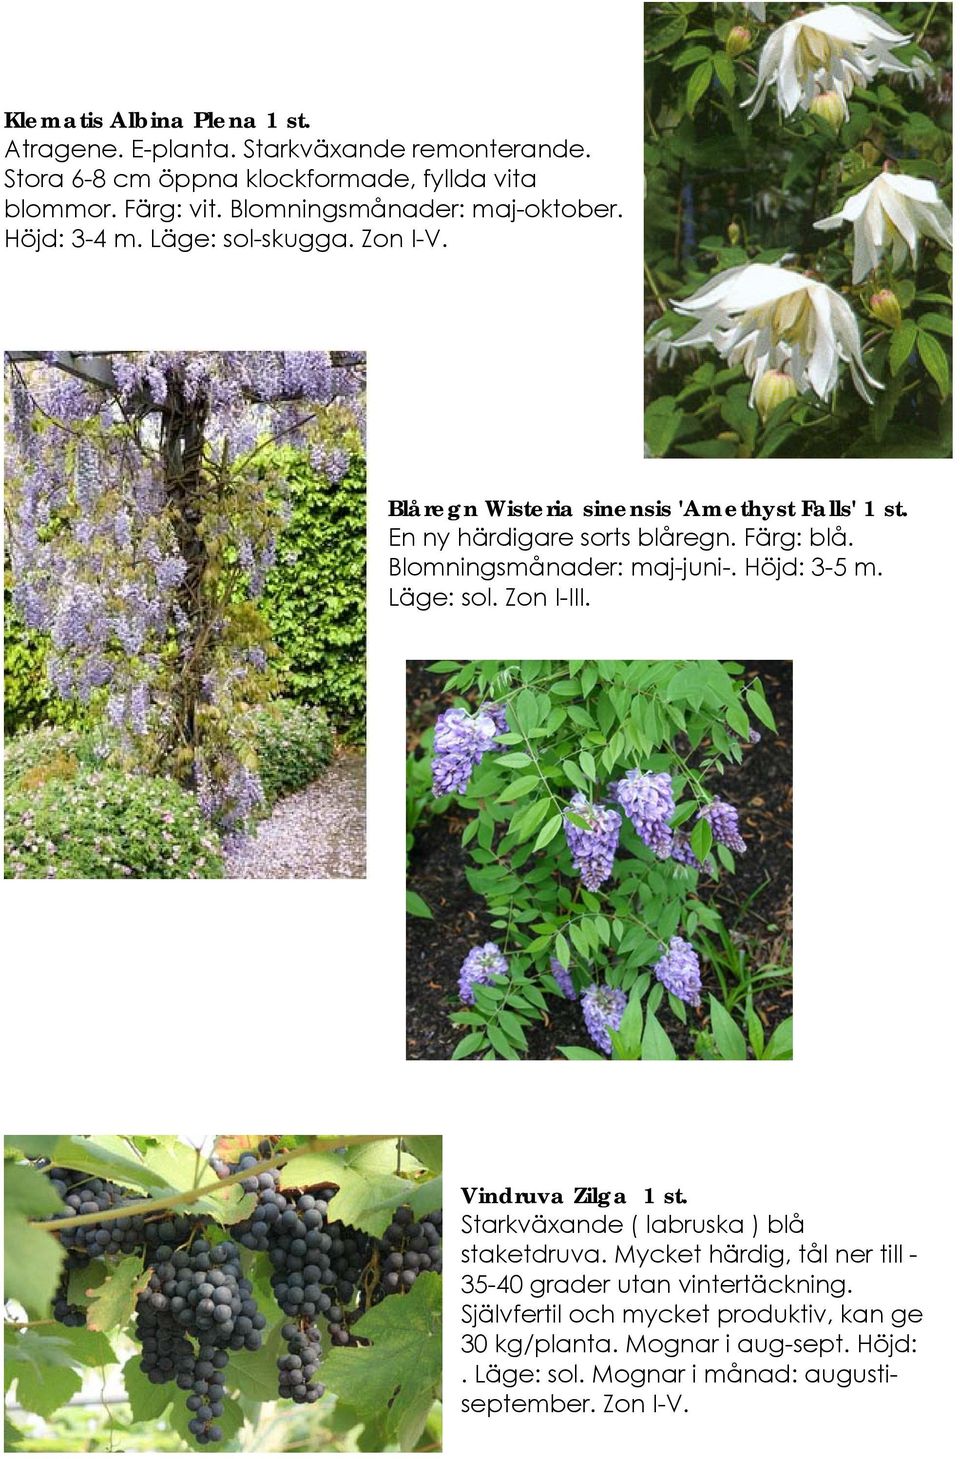 Färg: blå. Blomningsmånader: maj-juni-. Höjd: 3-5 m. Läge: sol. Zon I-III. Vindruva Zilga 1 st. Starkväxande ( labruska ) blå staketdruva.